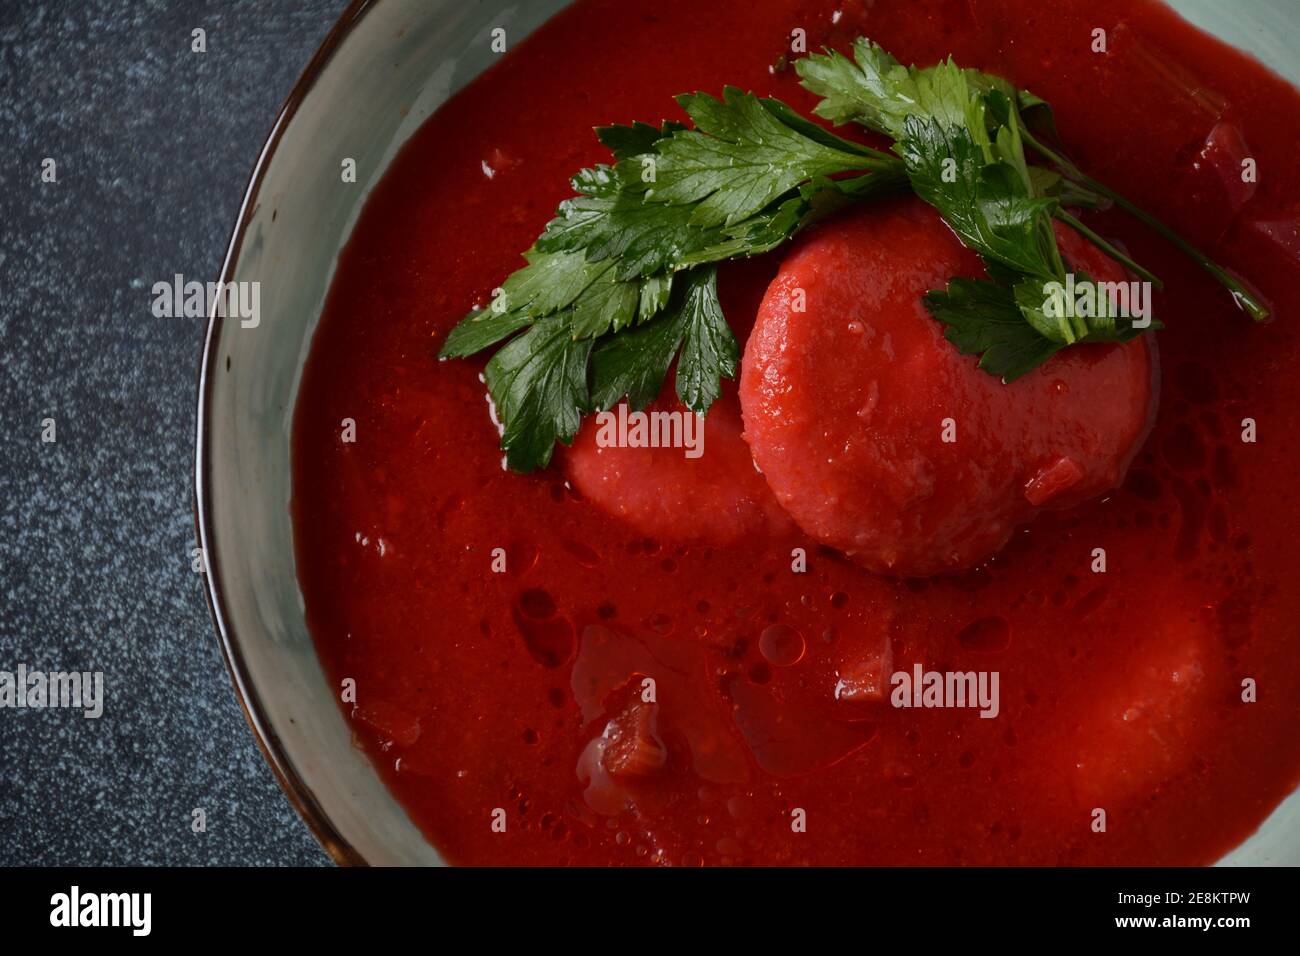 Soupe de betteraves rouges chaudes Kubbeh, un célèbre plat de soupe aux boulettes du Moyen-Orient, servi dans un bol. Une soupe d'hiver traditionnelle matfuniya judéo-irakienne. Levantine d Banque D'Images